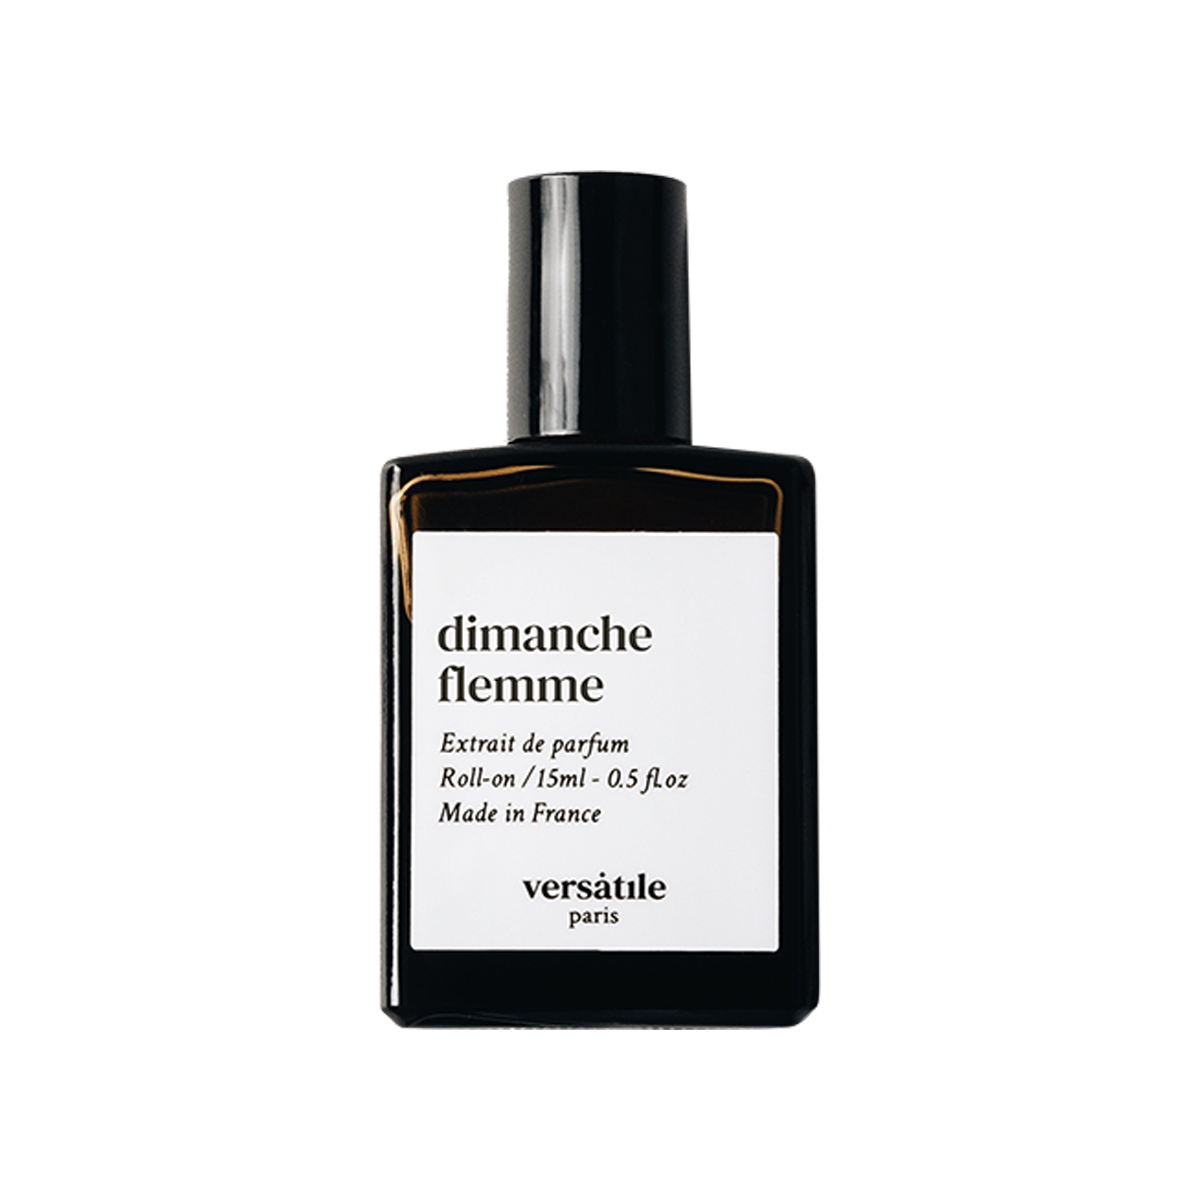 Versatile Paris - Dimanche Flemme Extrait De Parfum